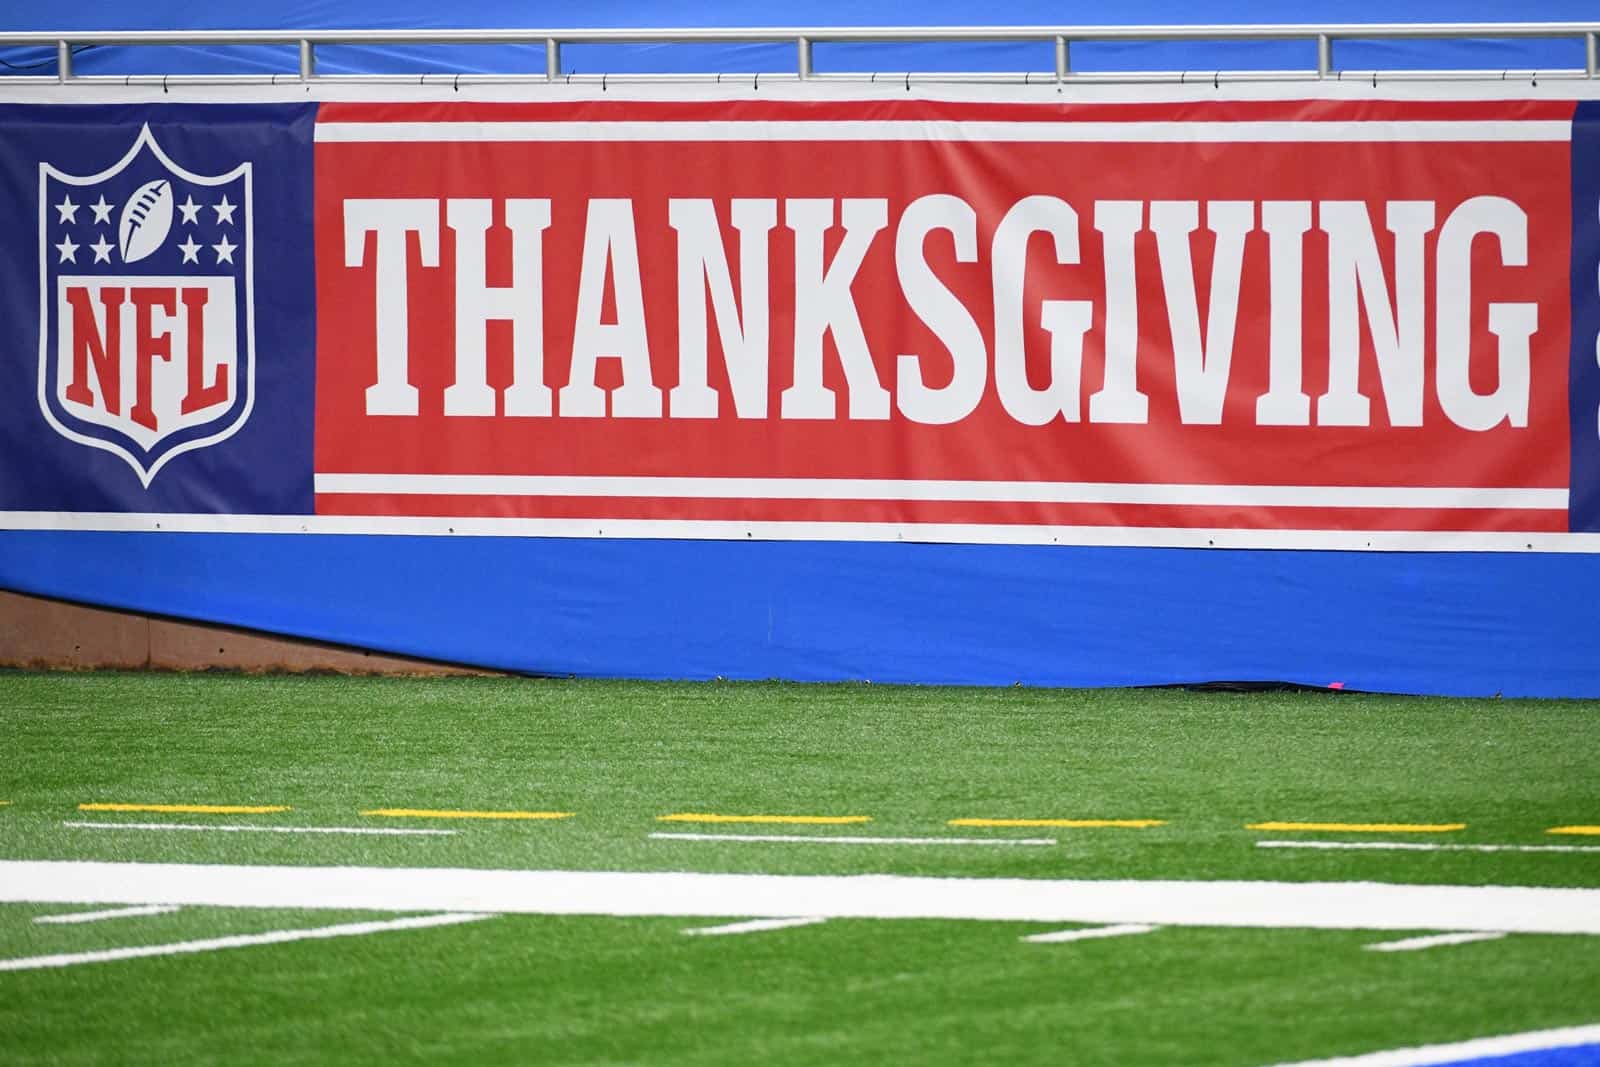 NFL Thanksgiving Schedule 2021